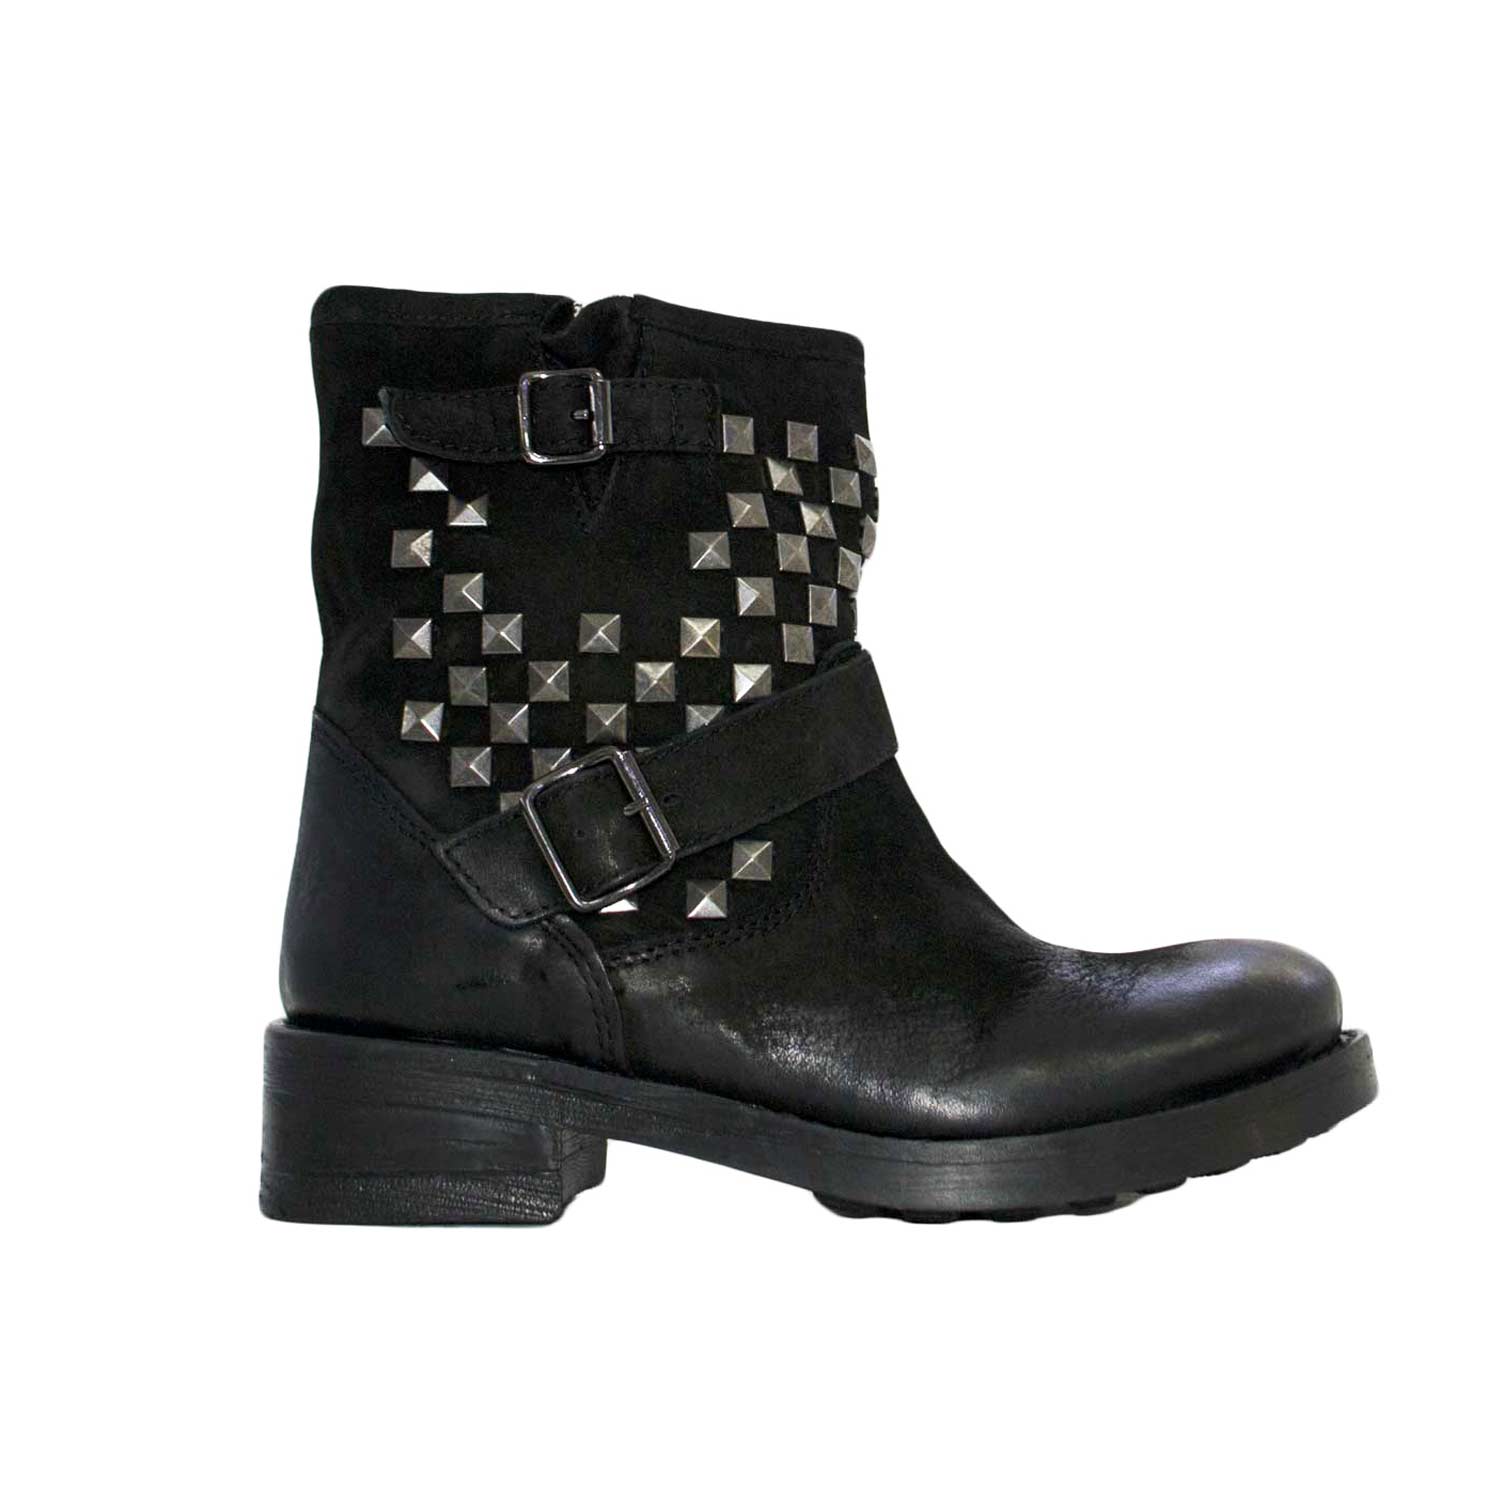 Stivaletti donna scarpe glamour vera pelle made in italy borchie nero donna  stivaletti Malu Shoes | MaluShoes